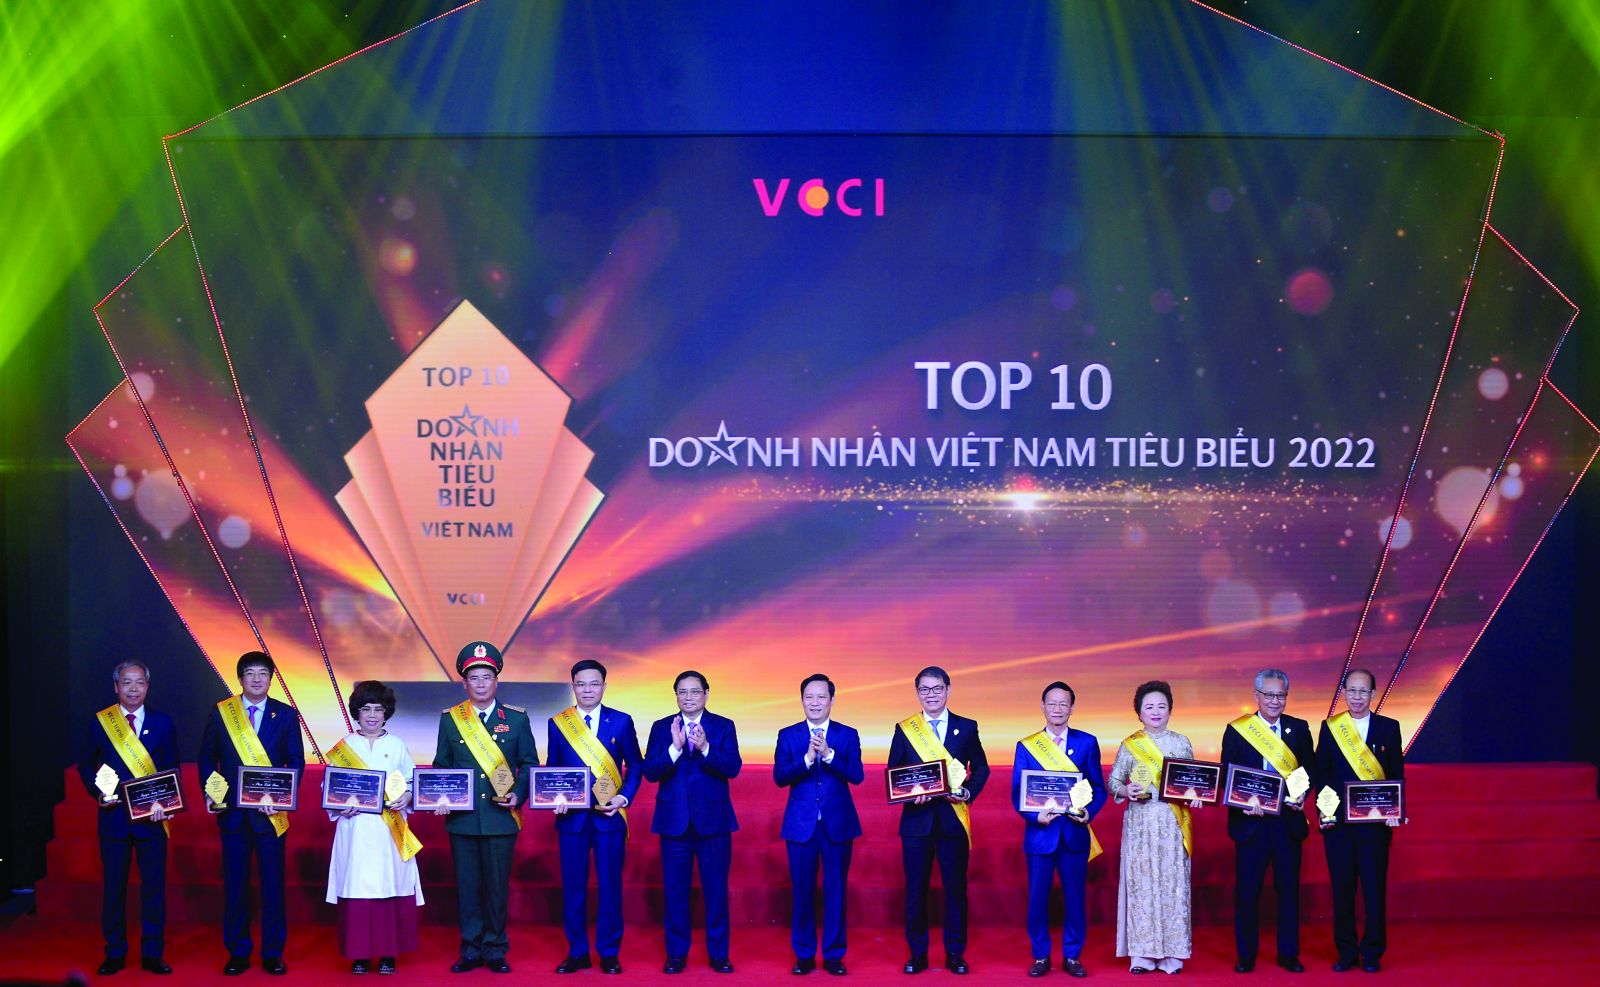  VCCI trao giải Top 10 doanh nhân tiêu biểu 2022.